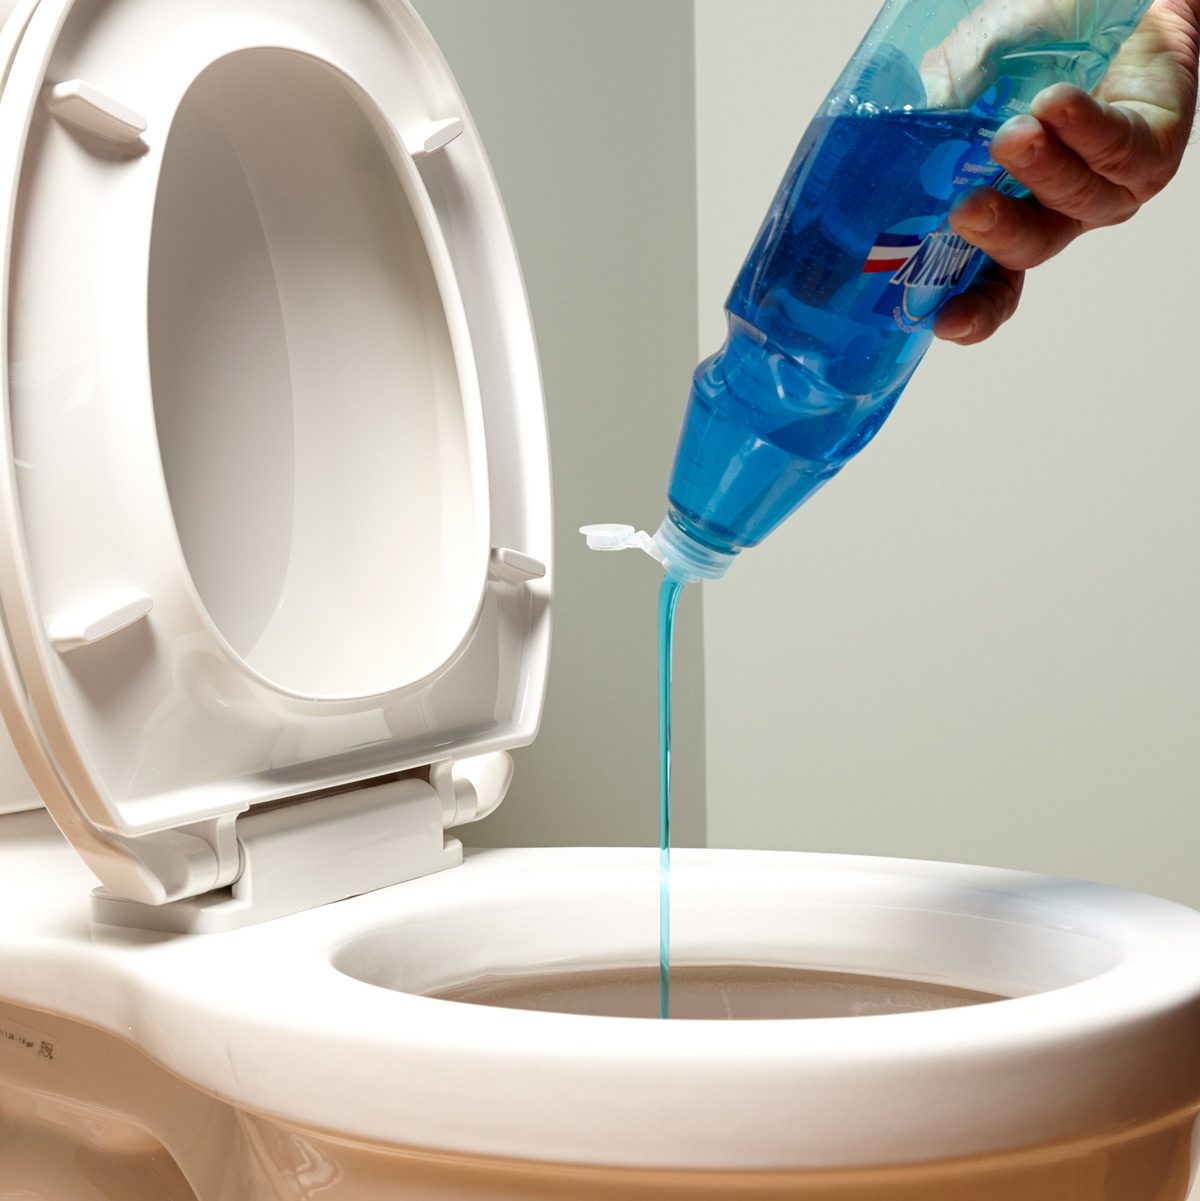 رفع گرفتگی توالت فرنگی با مایع ظرفشویی -لوله بازکنی کرج